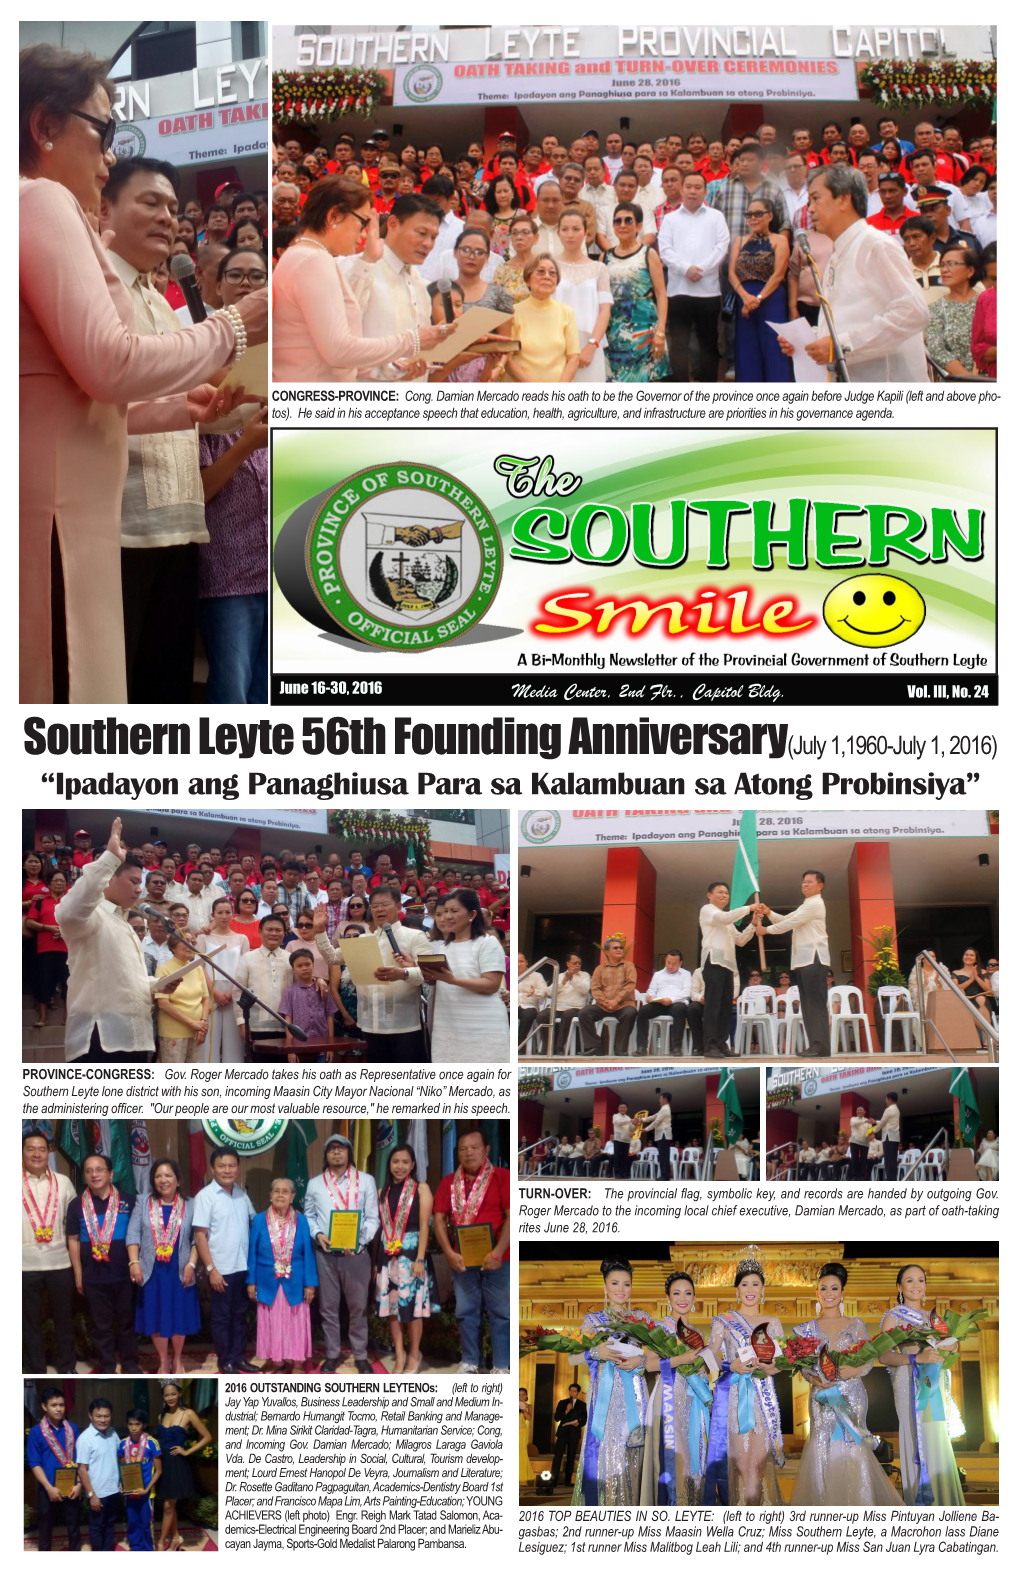 Southern Leyte 56Th Founding Anniversary(July 1,1960-July 1, 2016) “Ipadayon Ang Panaghiusa Para Sa Kalambuan Sa Atong Probinsiya”